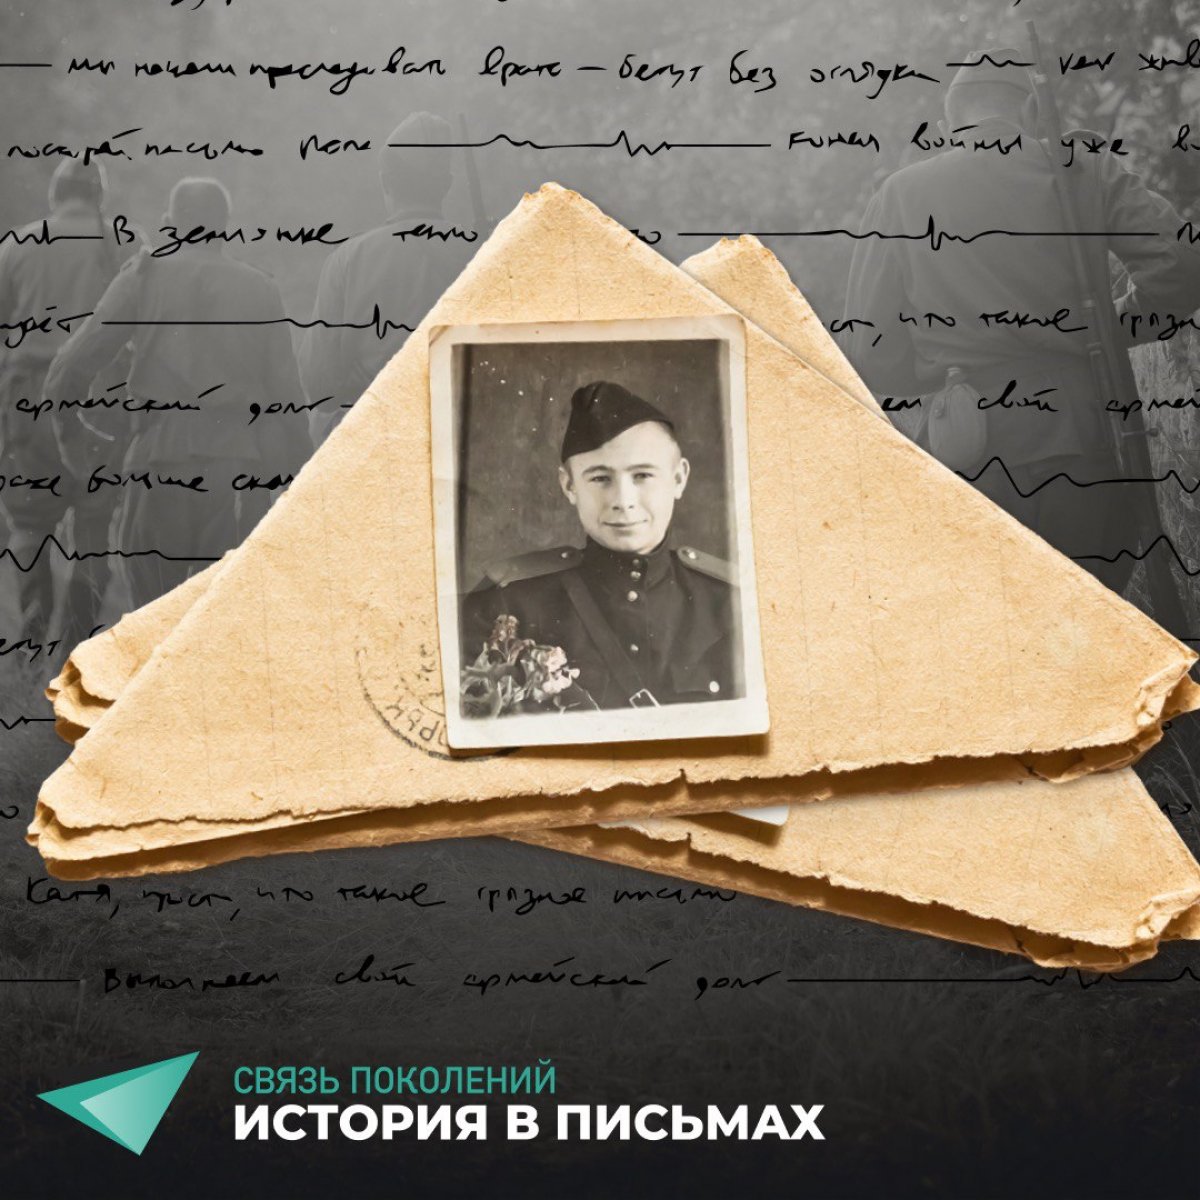 Примите участие в социальной акции памяти героев Великой Отечественной войны - «Связь поколений - история в письмах»!